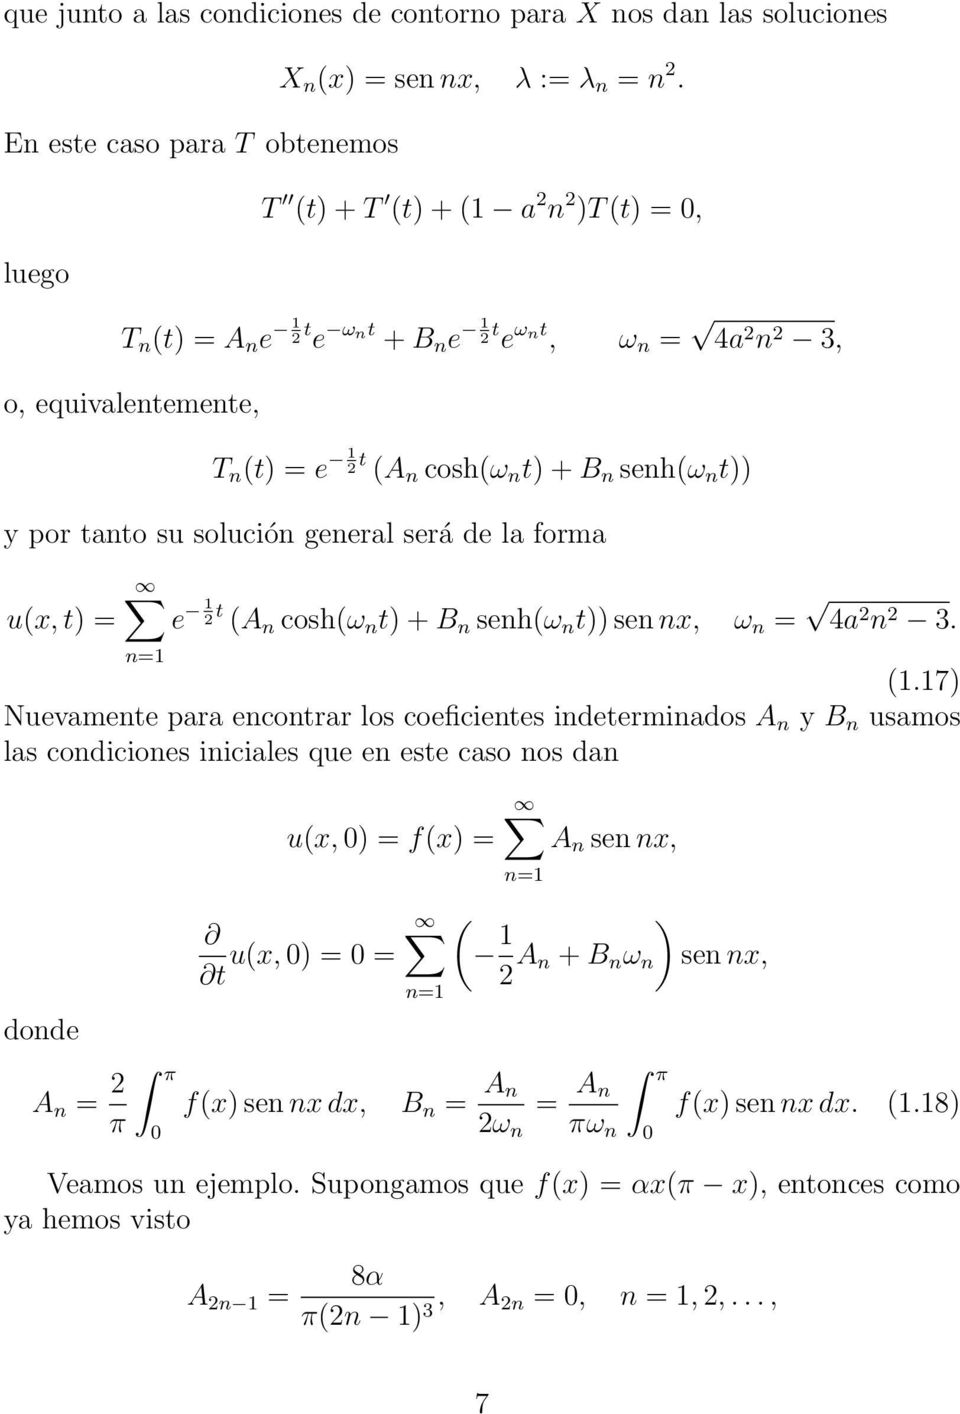 solución general será de la forma u(x, t) = e 1 2 t (A n cosh(ω n t) + B n senh(ω n t)) sen nx, ω n = 4a 2 n 2 3. (1.